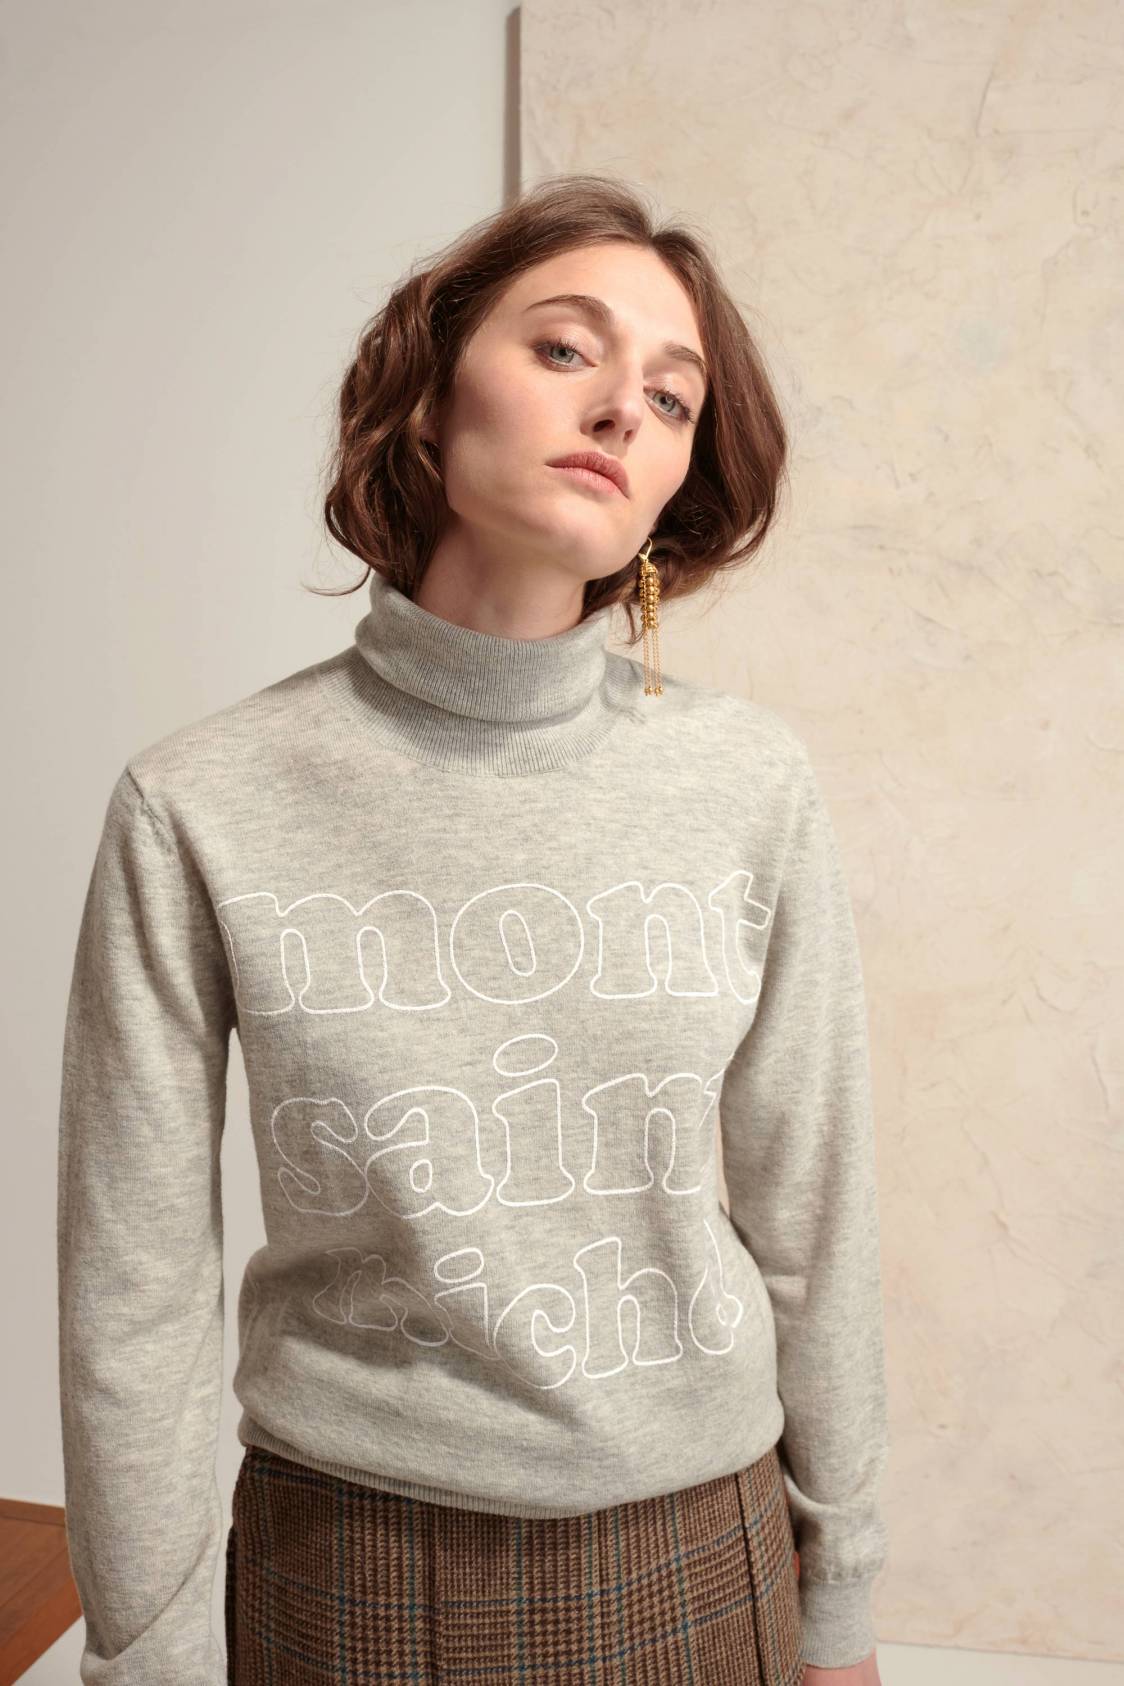 Screen-printed Sweater